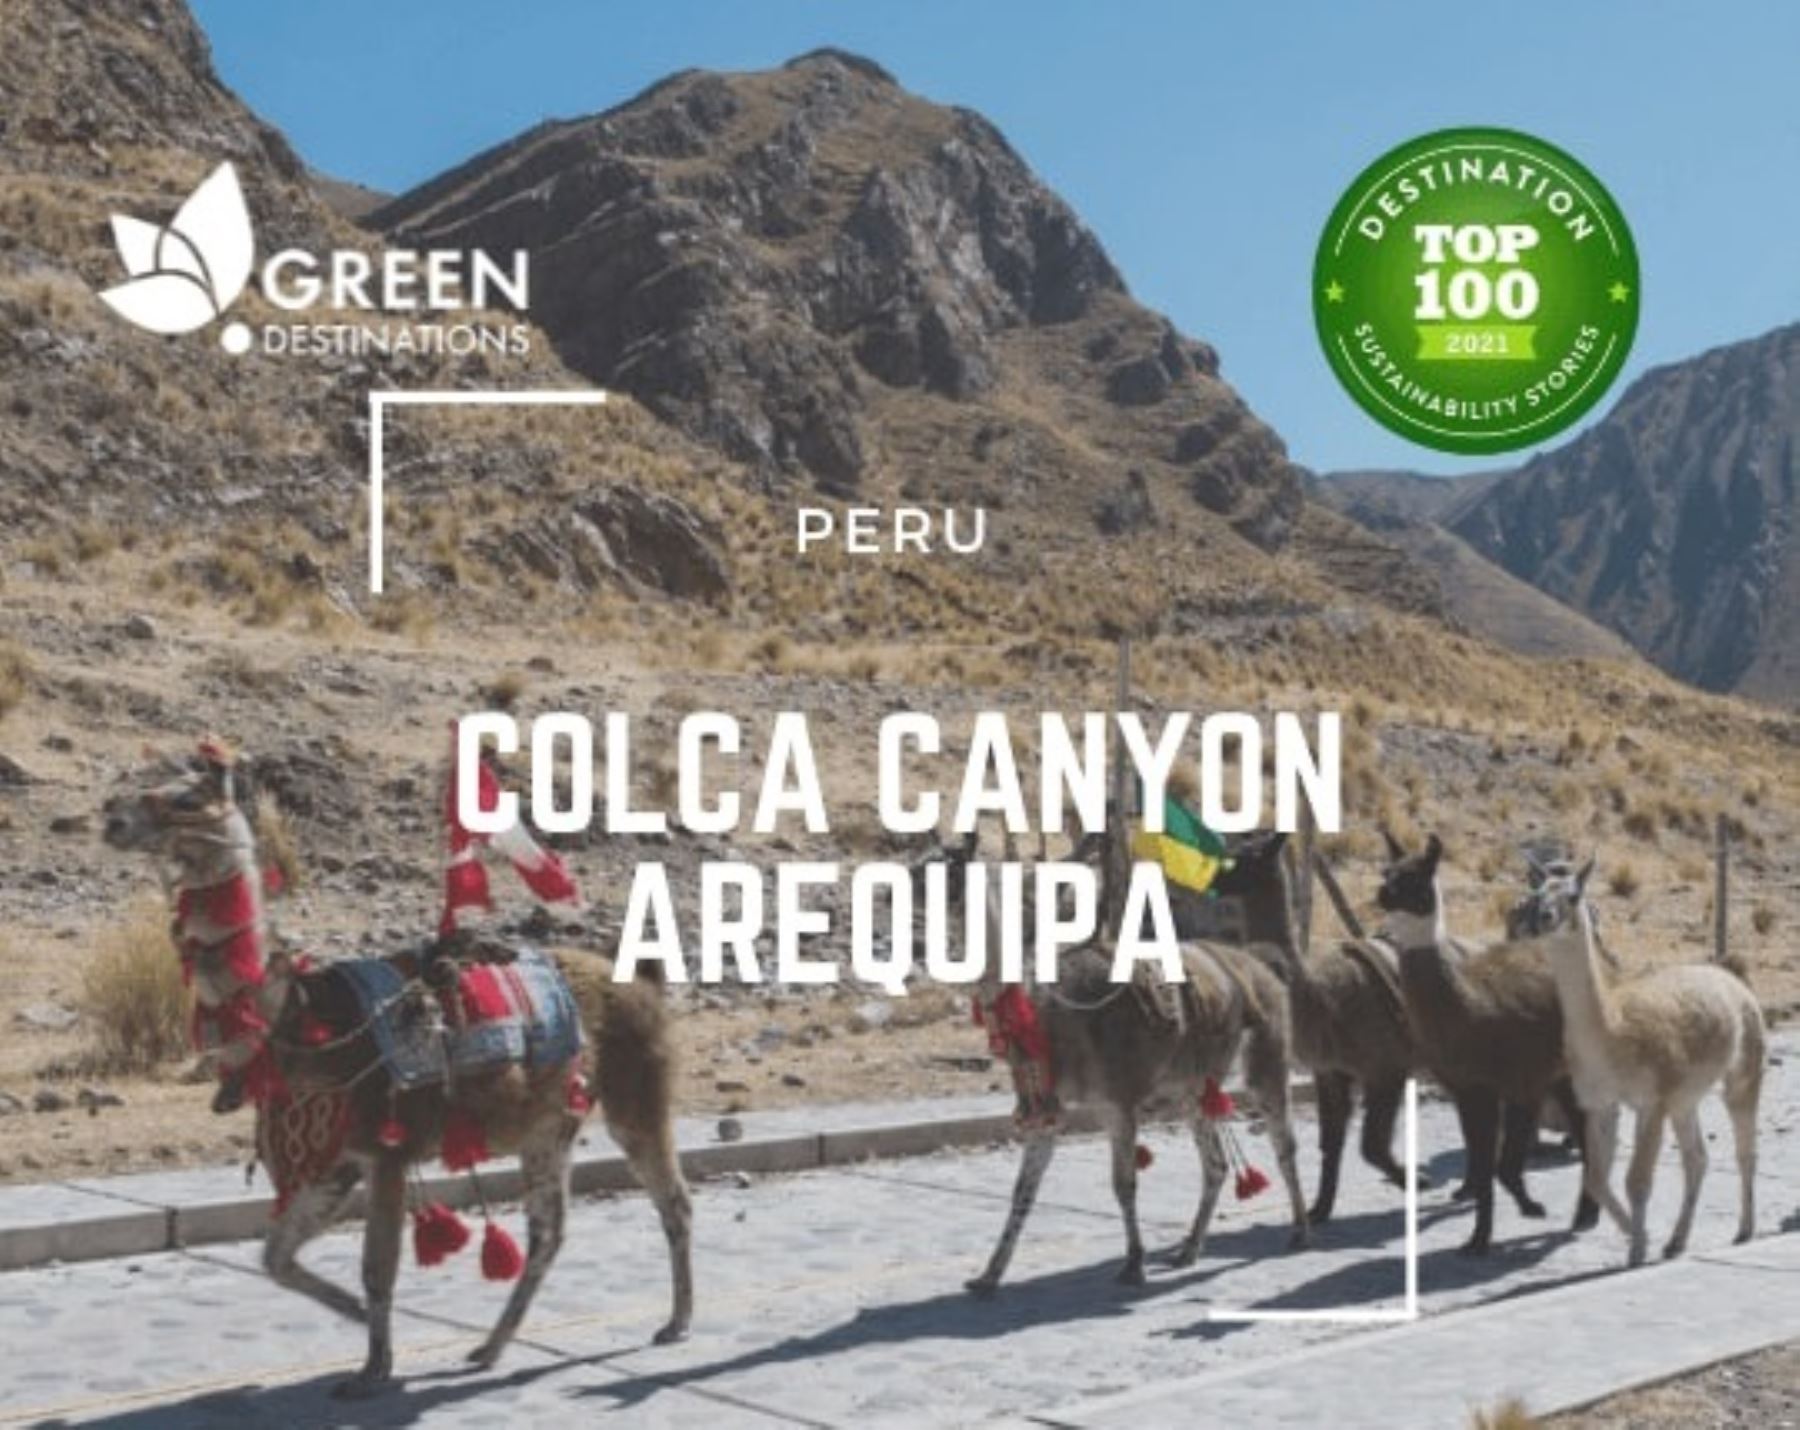 El cañón del Colca, ubicado en Arequipa, es uno de los destinos turísticos peruanos premiados con los "Green Destinations Stories Awards At IBT Berlín 2022".